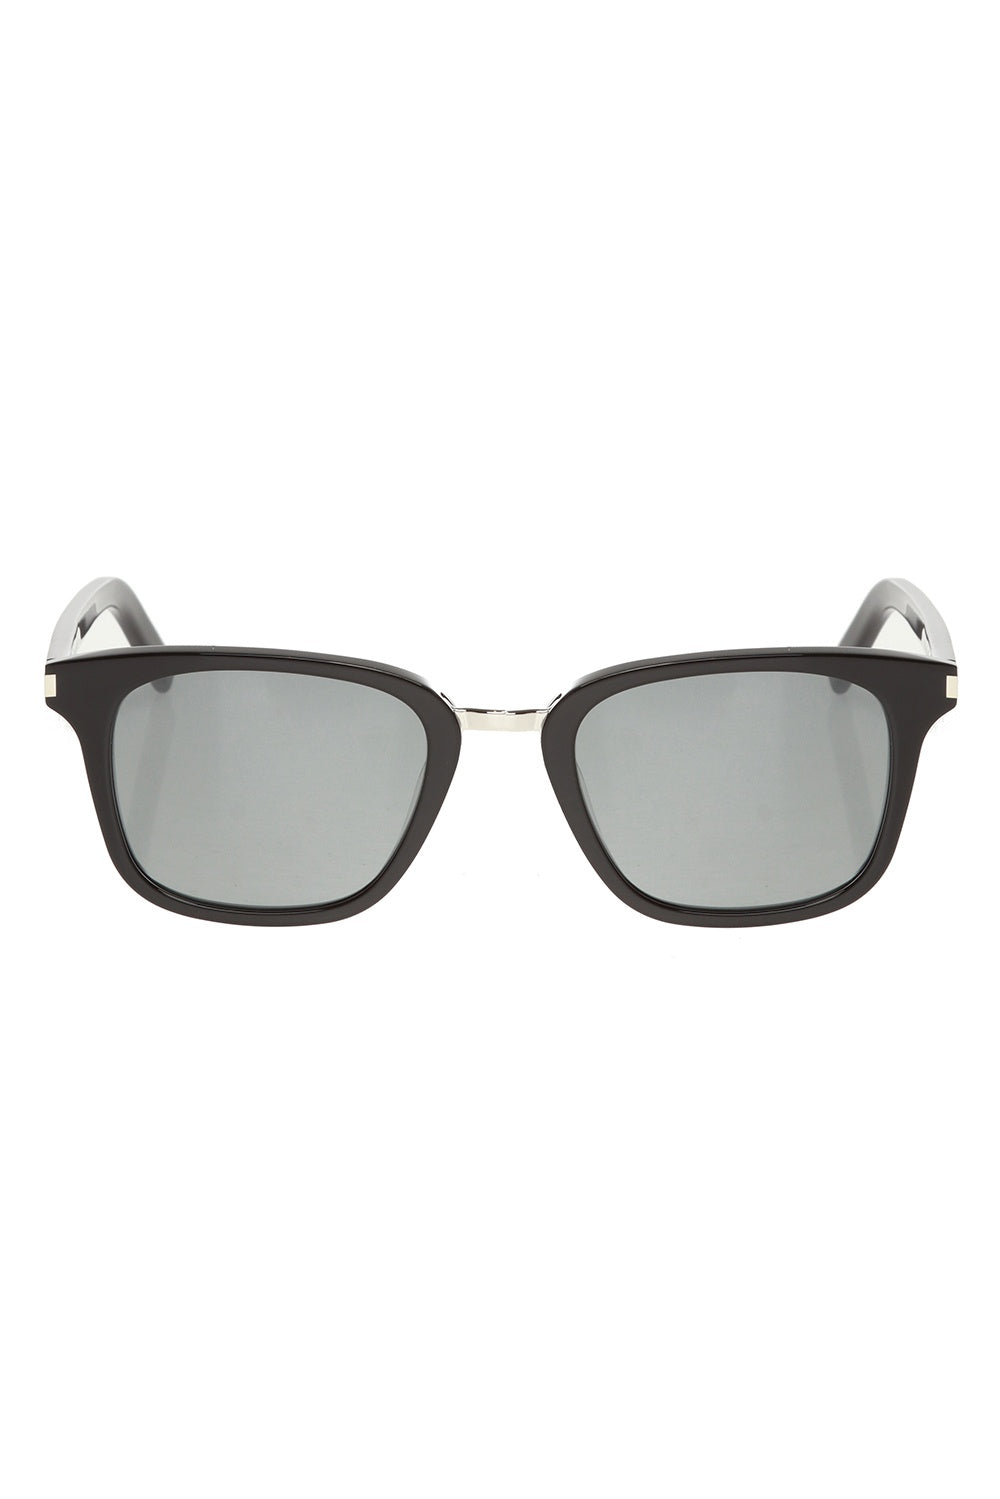 Saint Laurent  - lunettes de soleil SL 341 slim - Noir